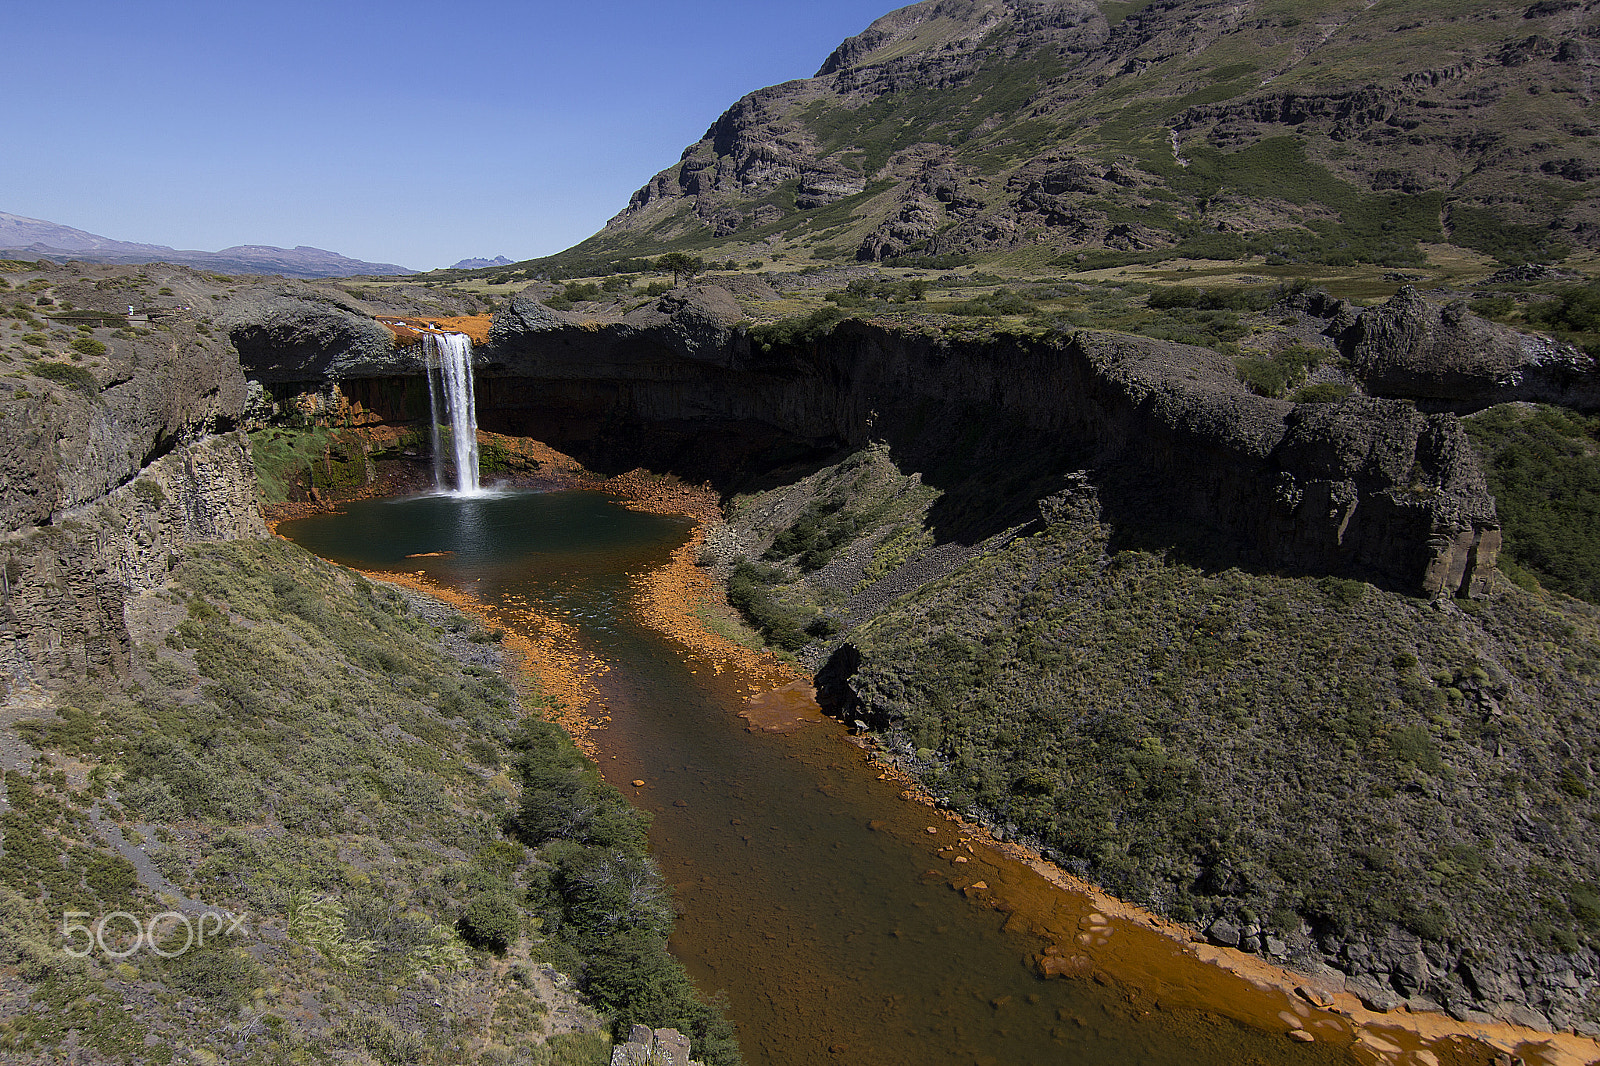 Canon EOS 60D sample photo. Cascada del rio agrio, caviahue, argentina photography